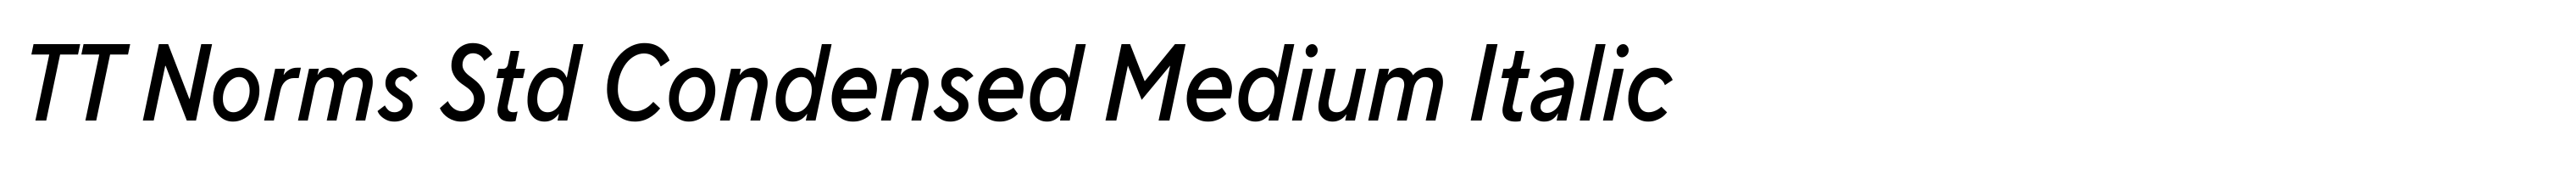 TT Norms Std Condensed Medium Italic